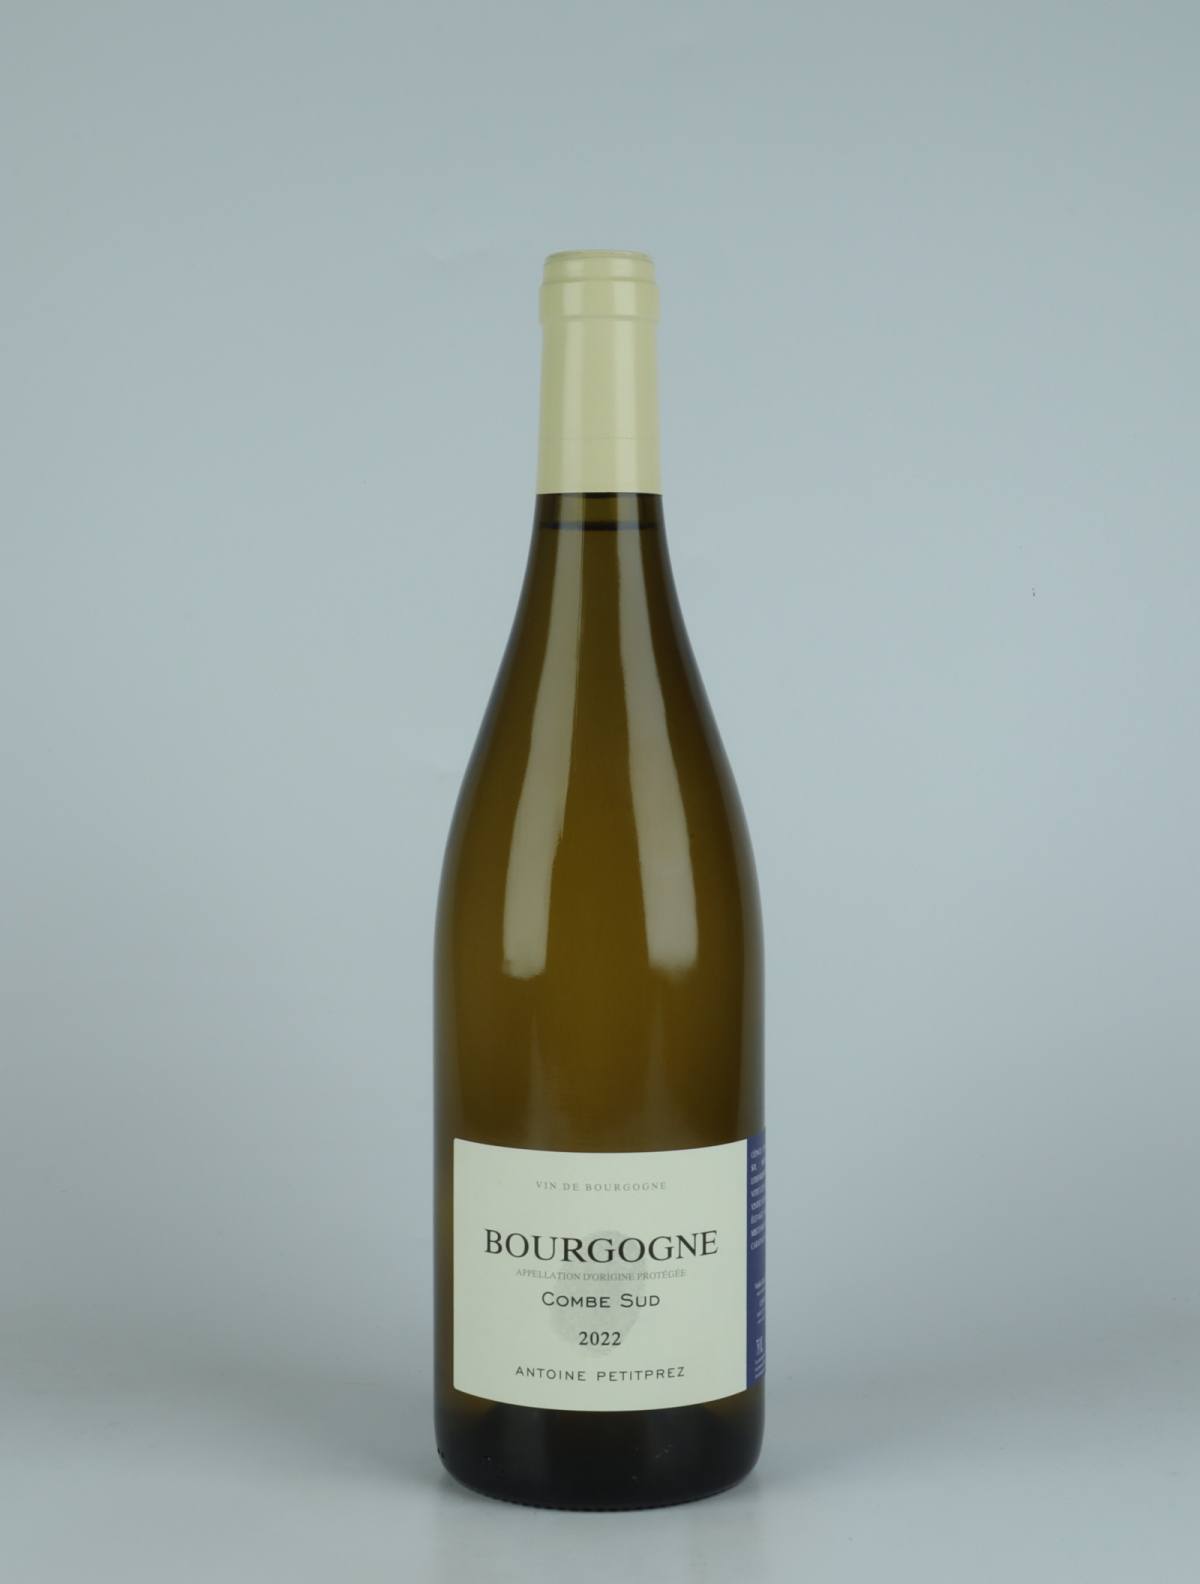 A bottle 2022 Bourgogne Blanc - La Combe Sud White wine from Antoine Petitprez, Burgundy in France